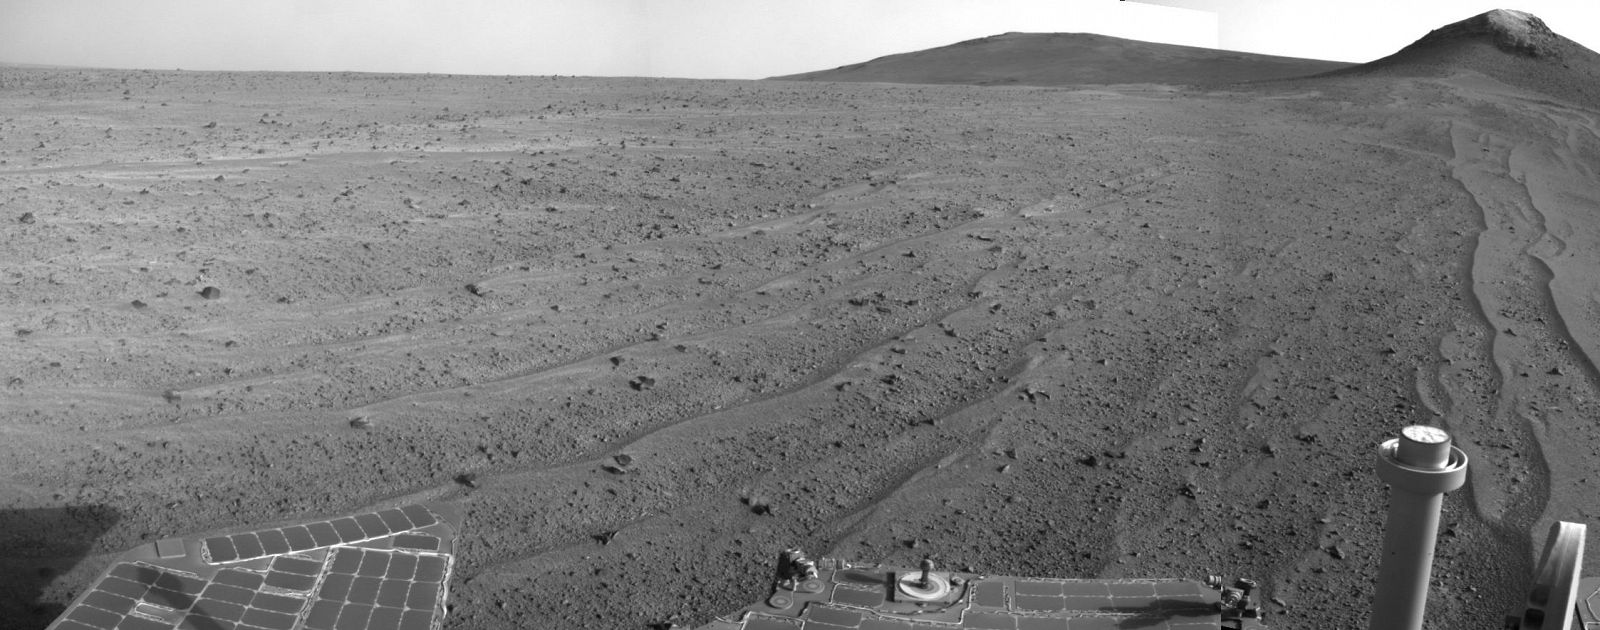 Imagen de Marte captada por el rover Opportunity de la Nasa